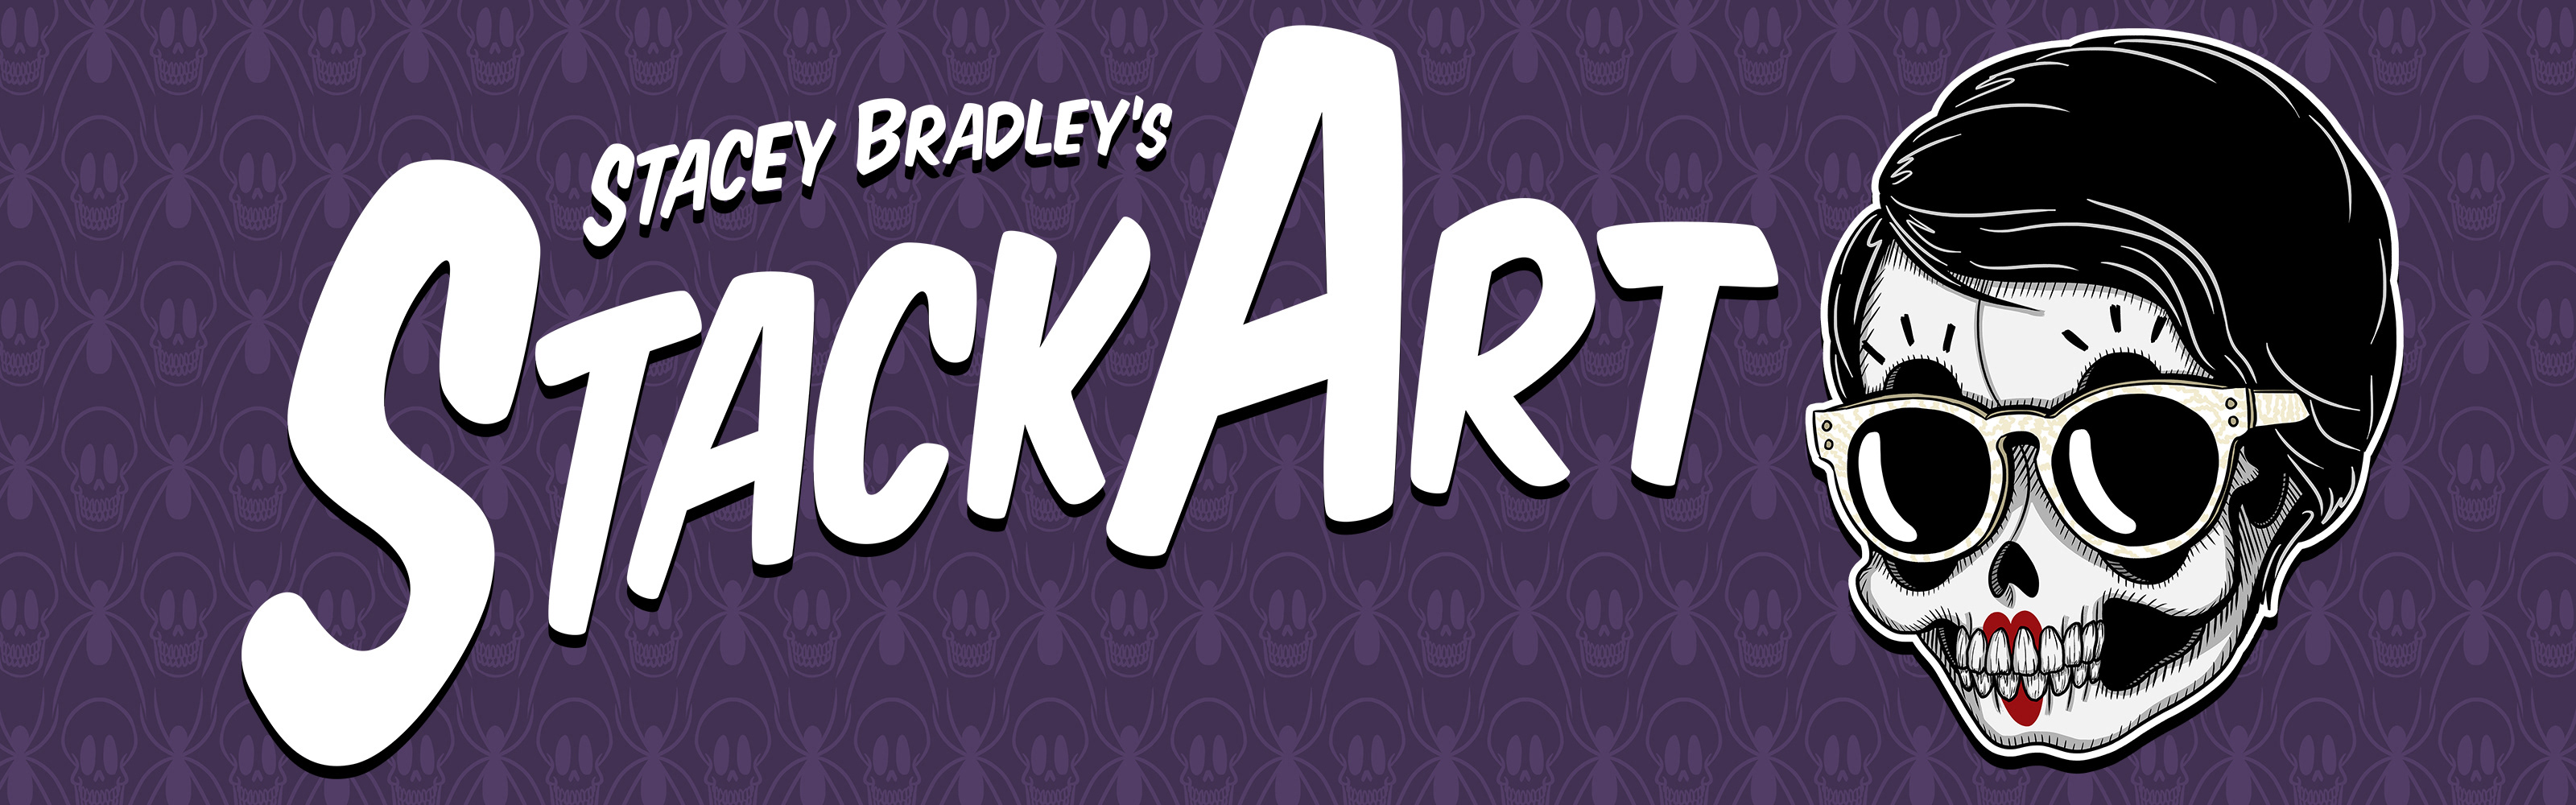 Stacey Bradley's StackArt